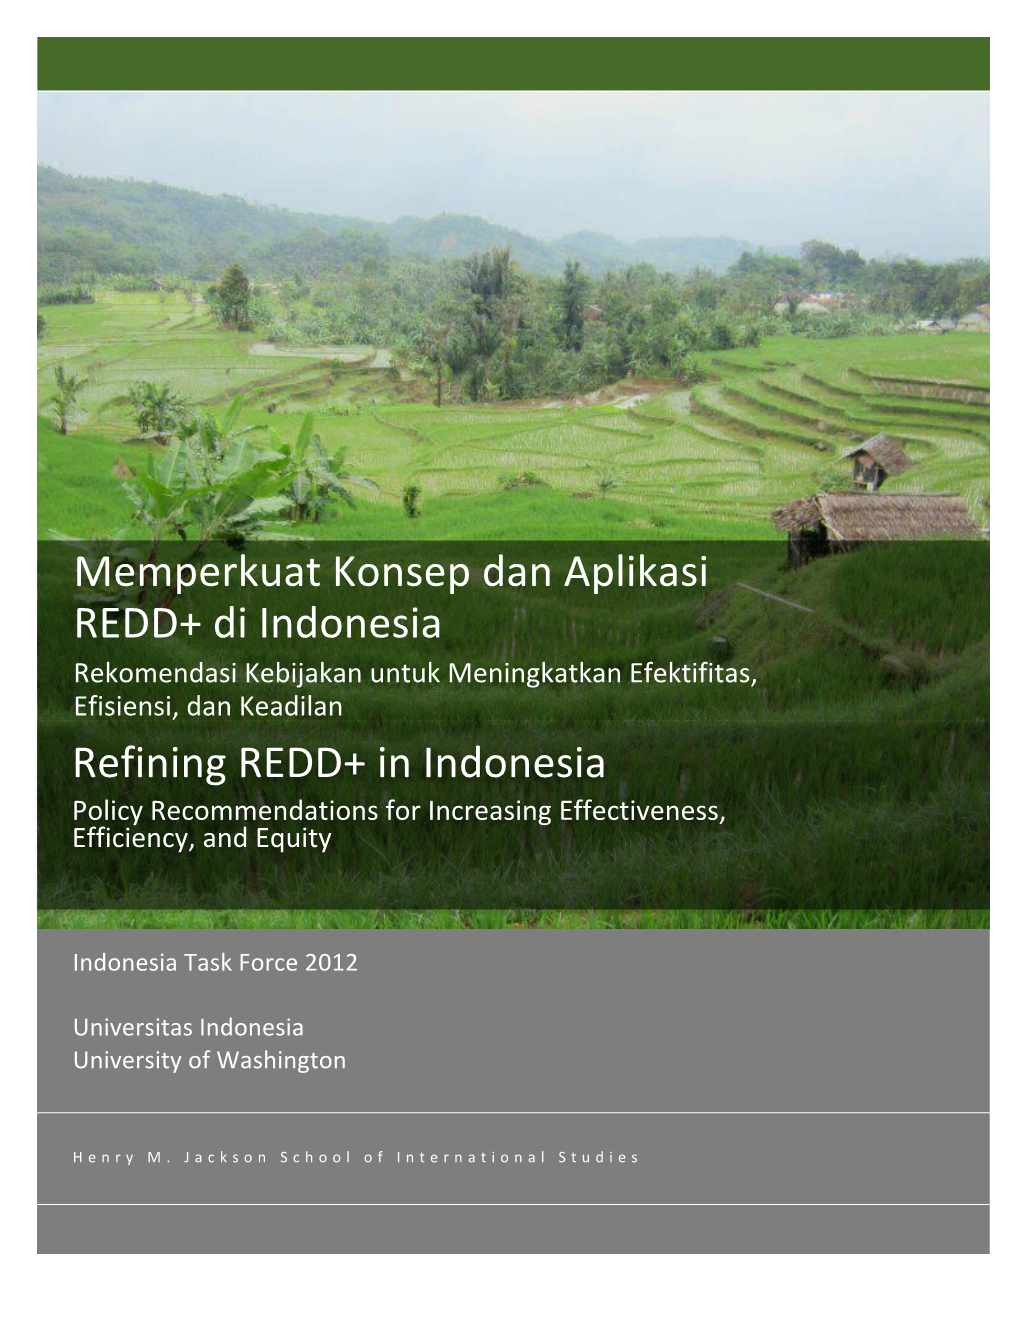 Memperkuat Konsep Dan Aplikasi REDD+ Di Indonesia Refining